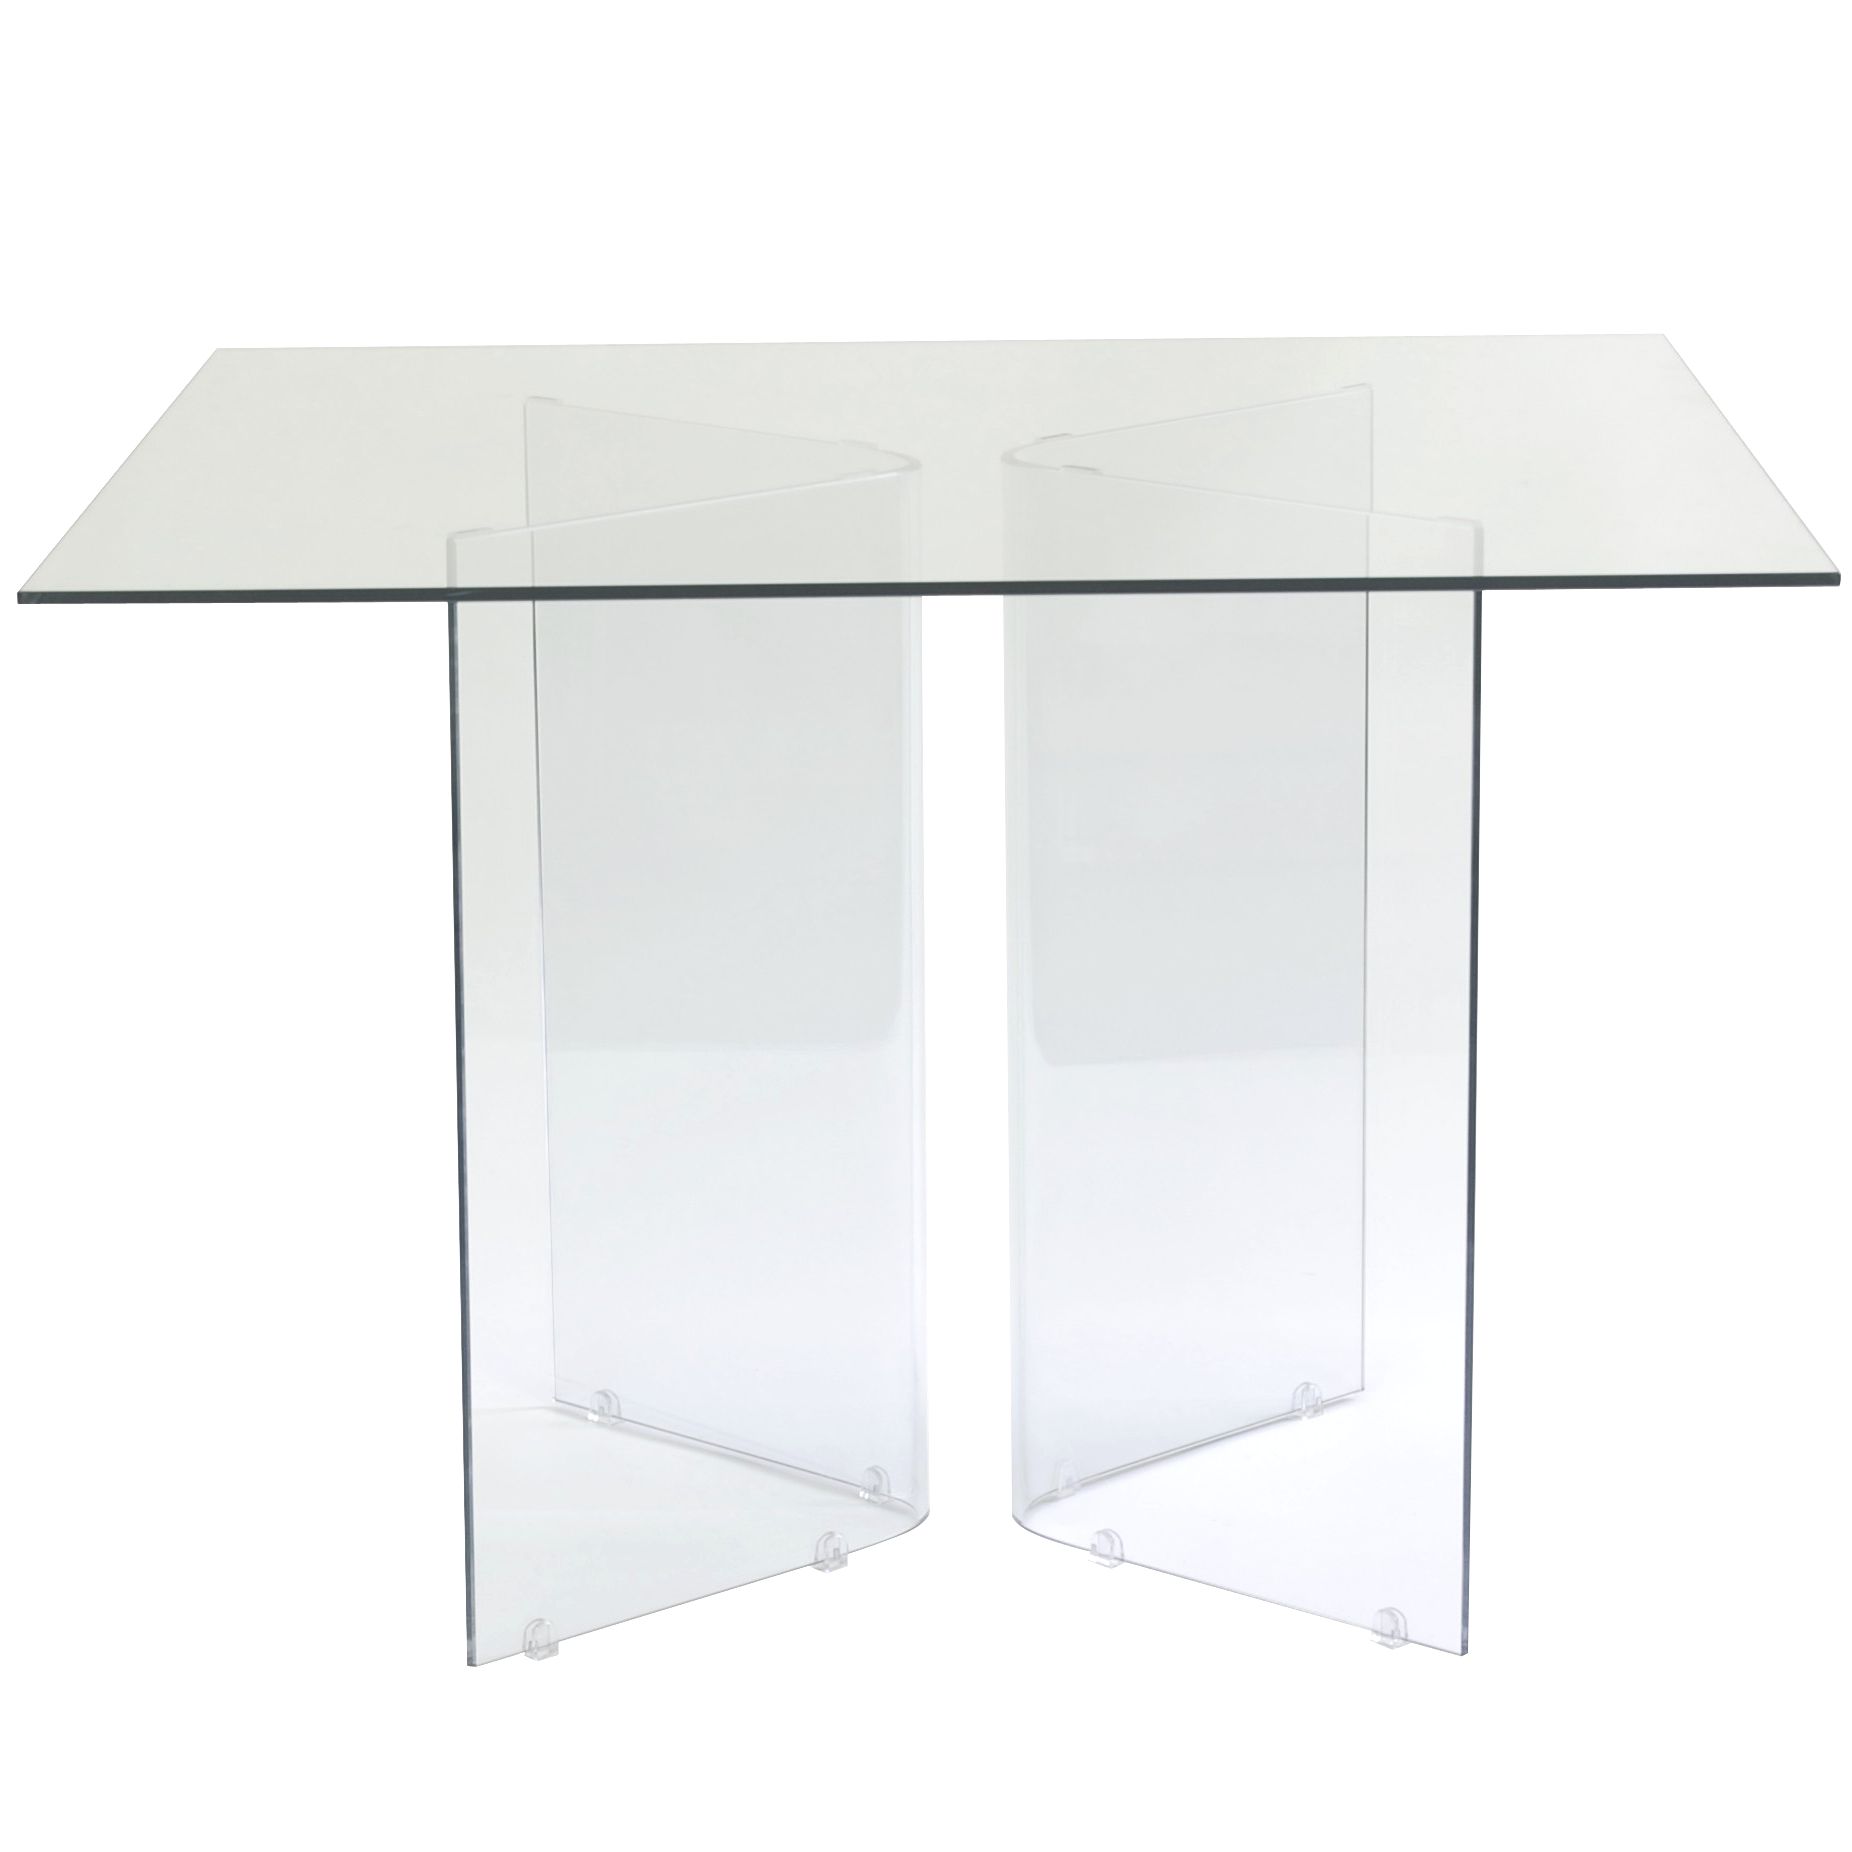 Apollo Square Table, 130cm